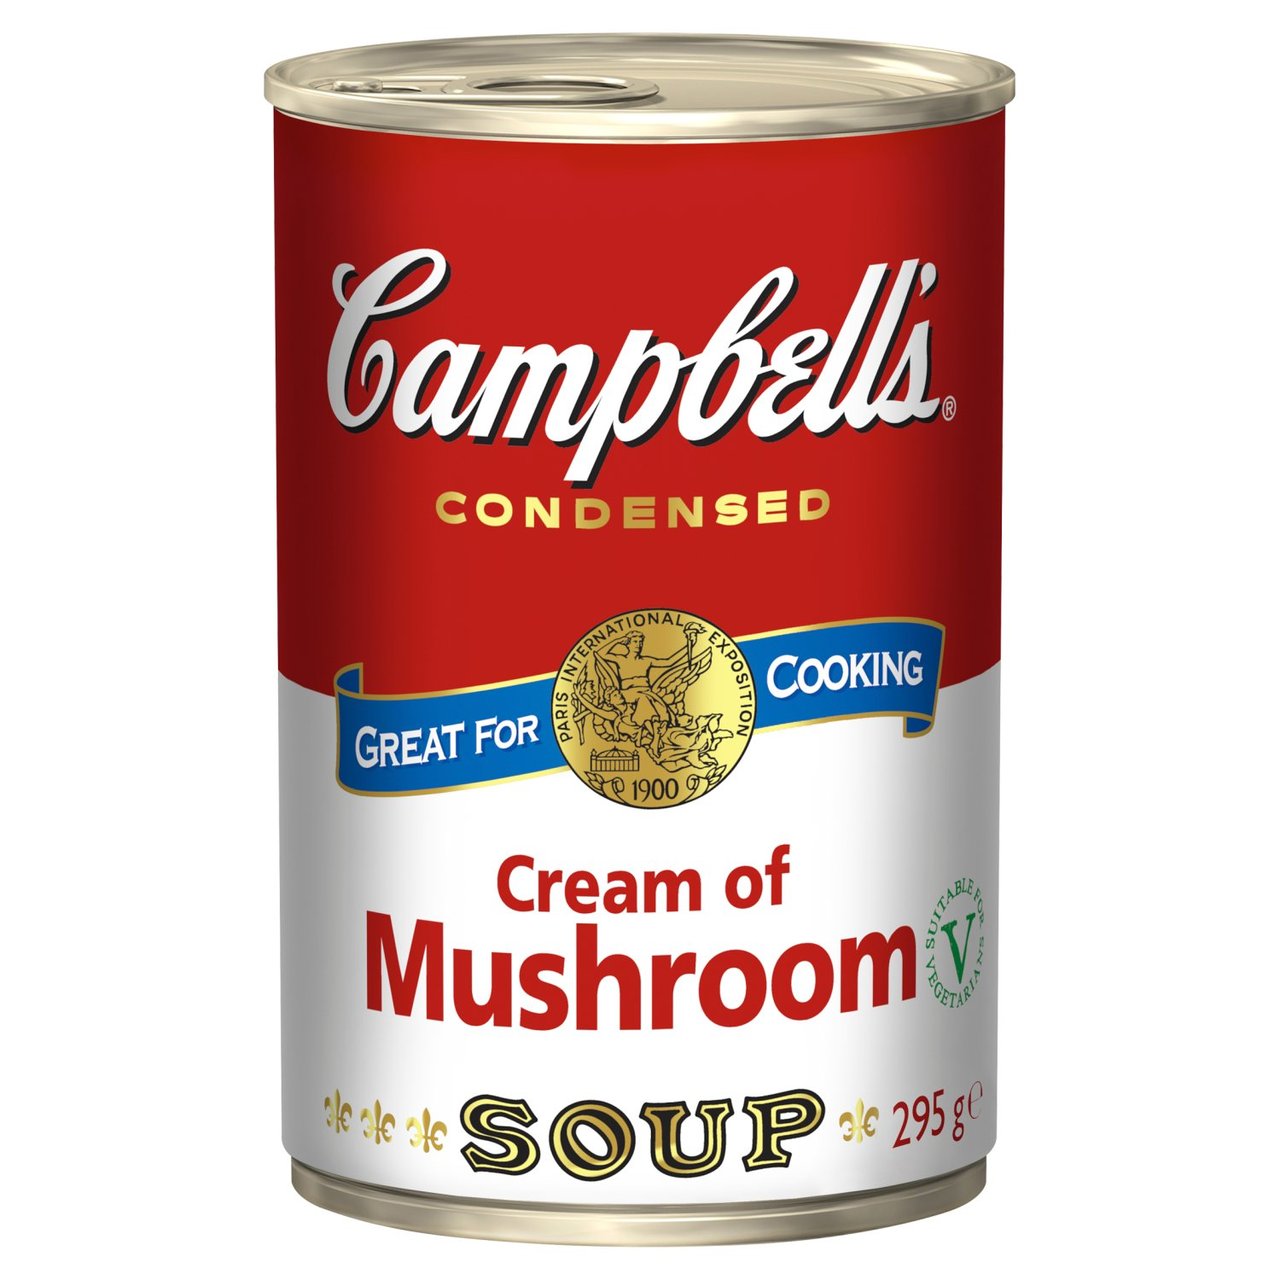 Campbells Mushroom Soup [532]